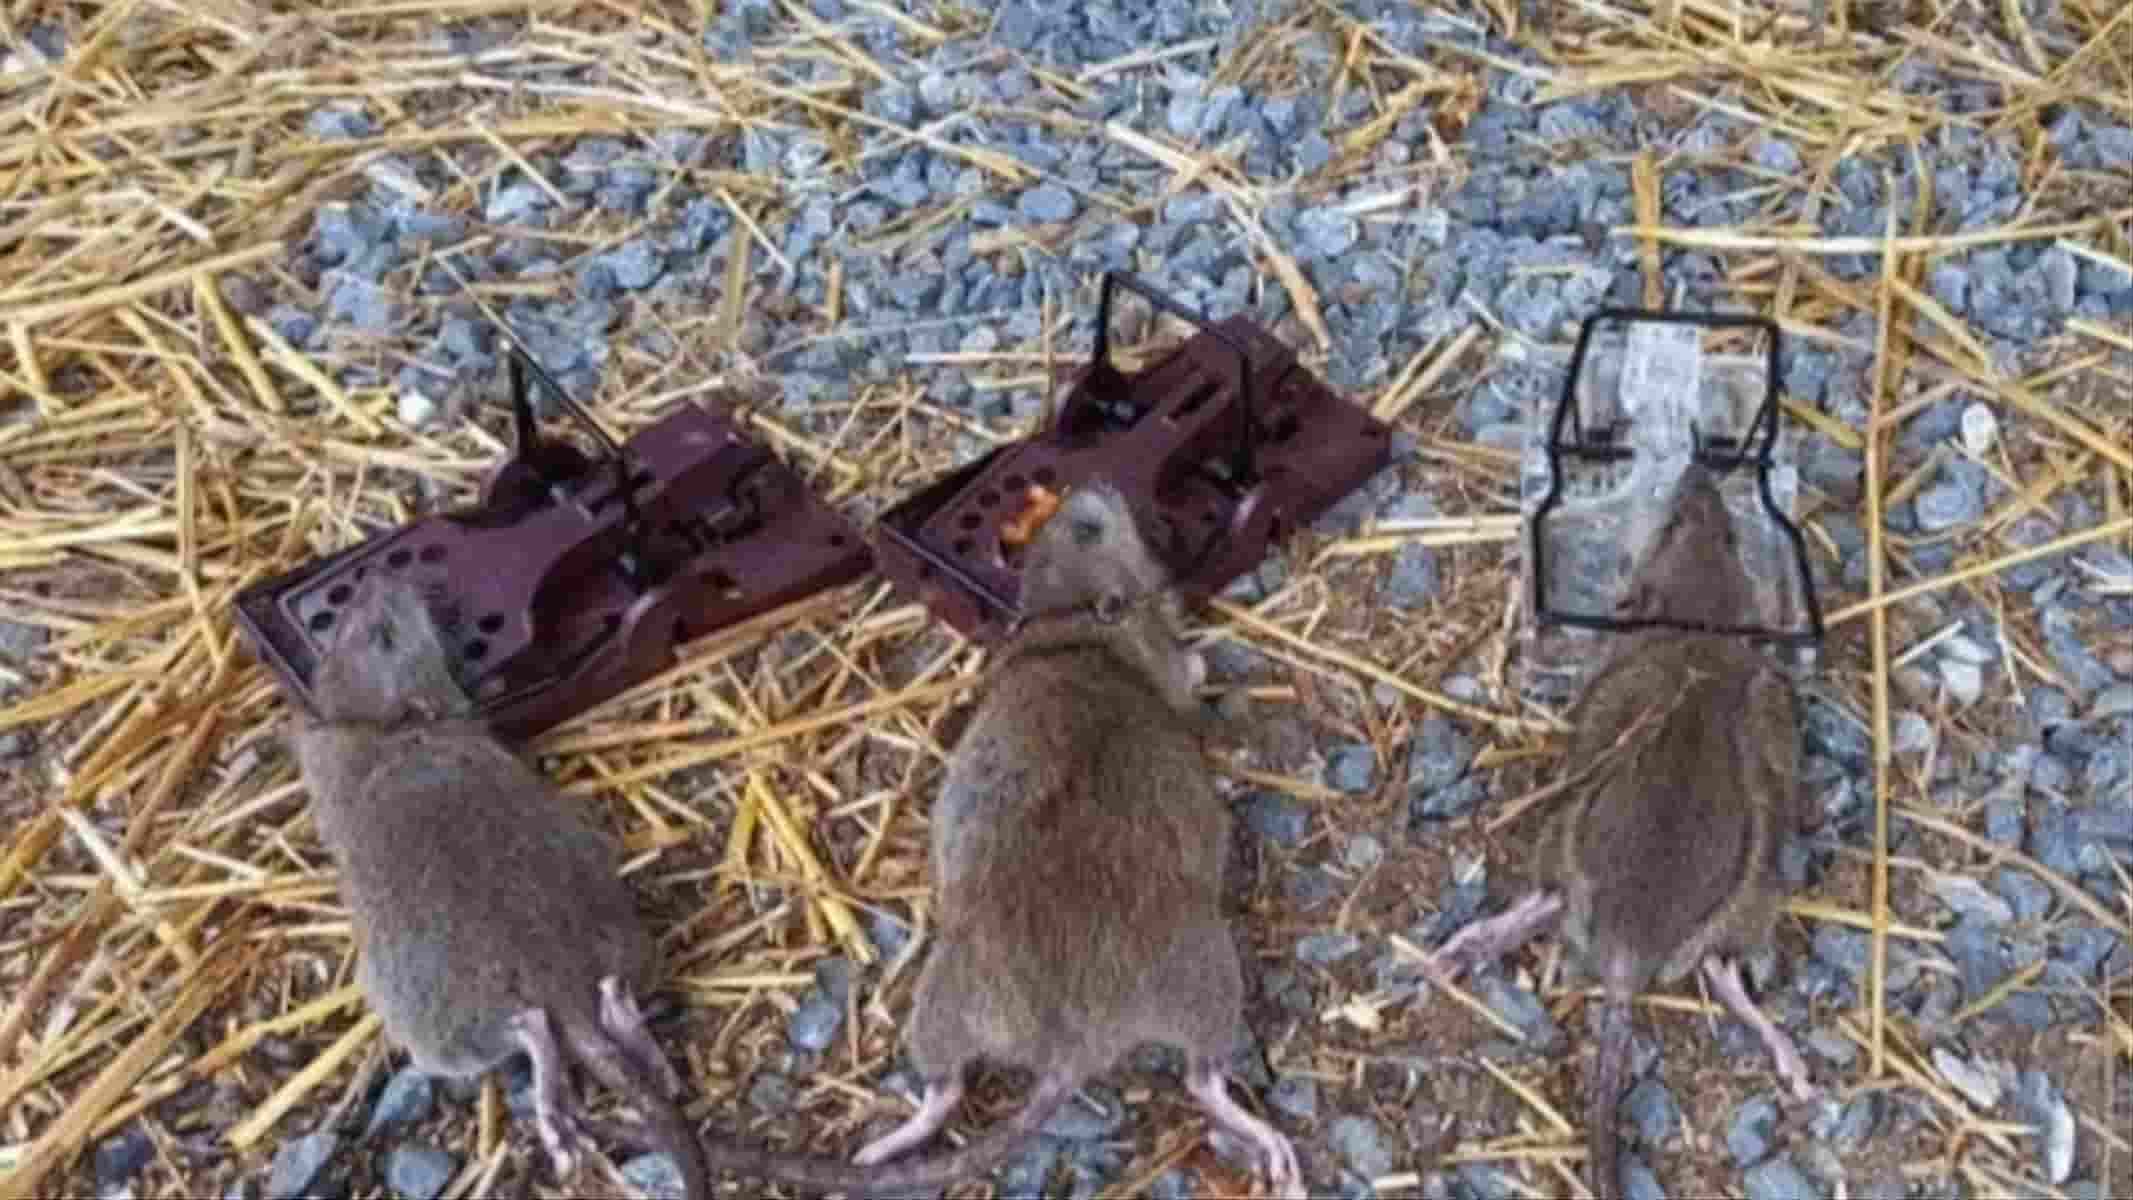 Comment se débarrasser des rats dans le compost ? - Gamm vert